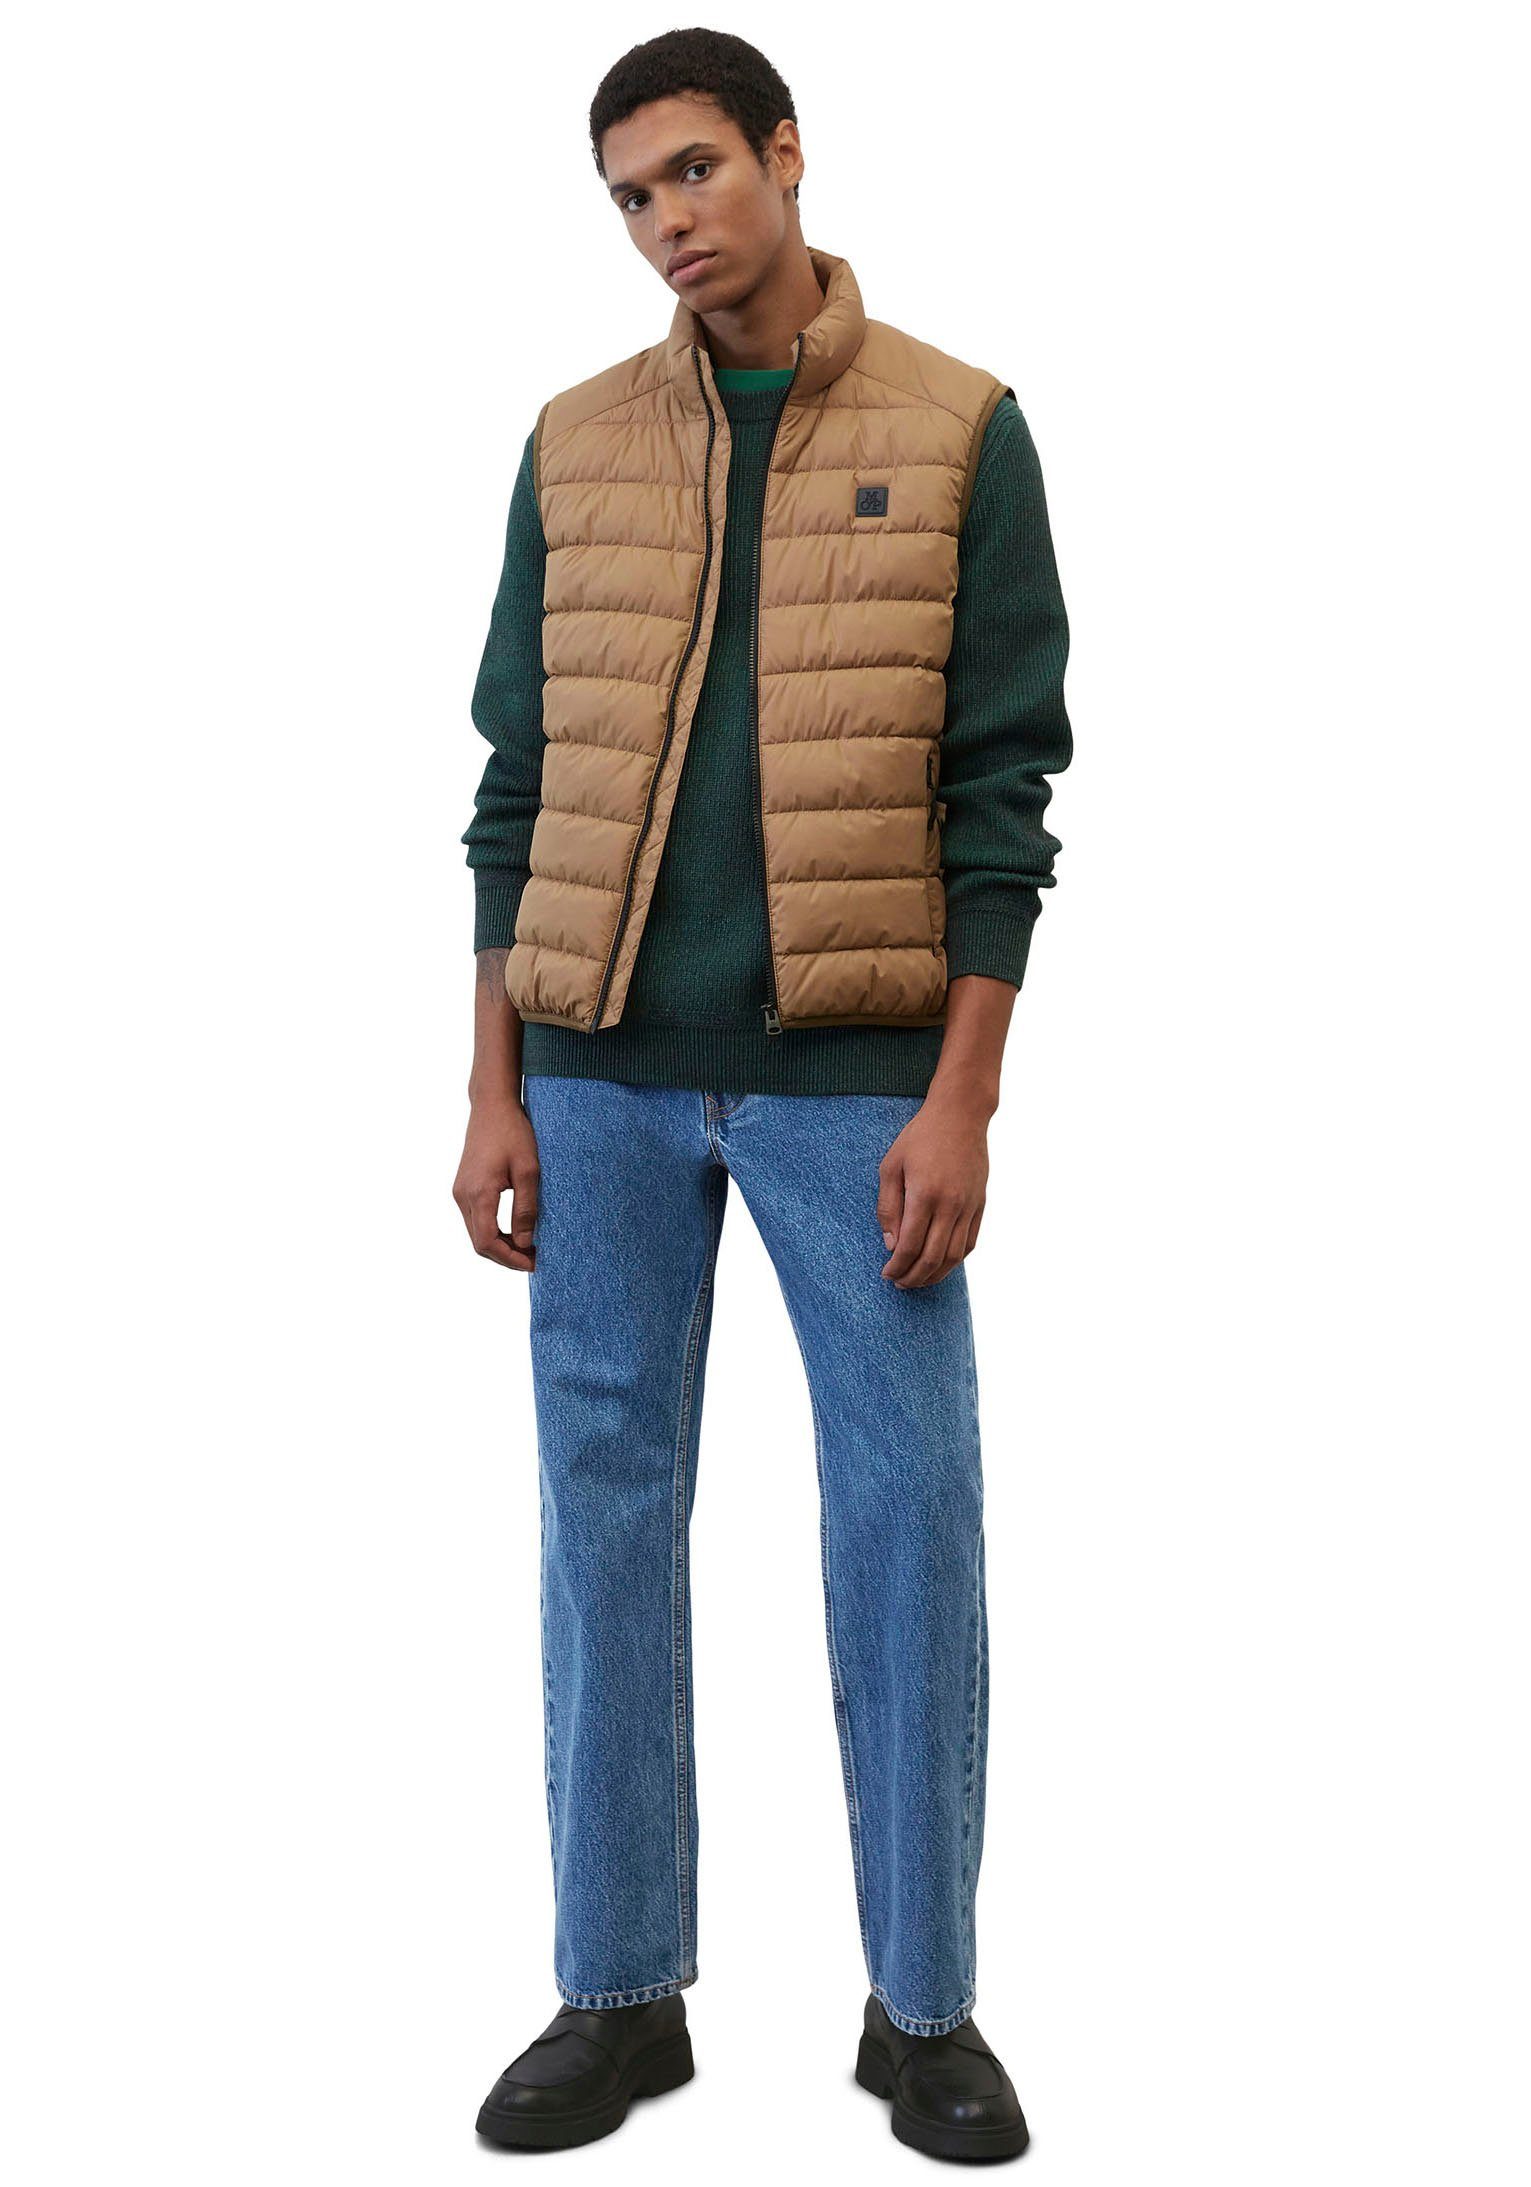 Marc O'Polo Steppweste Vest, mit sdnd, brown collar casabella Oberfläche wasserabweisender stand-up